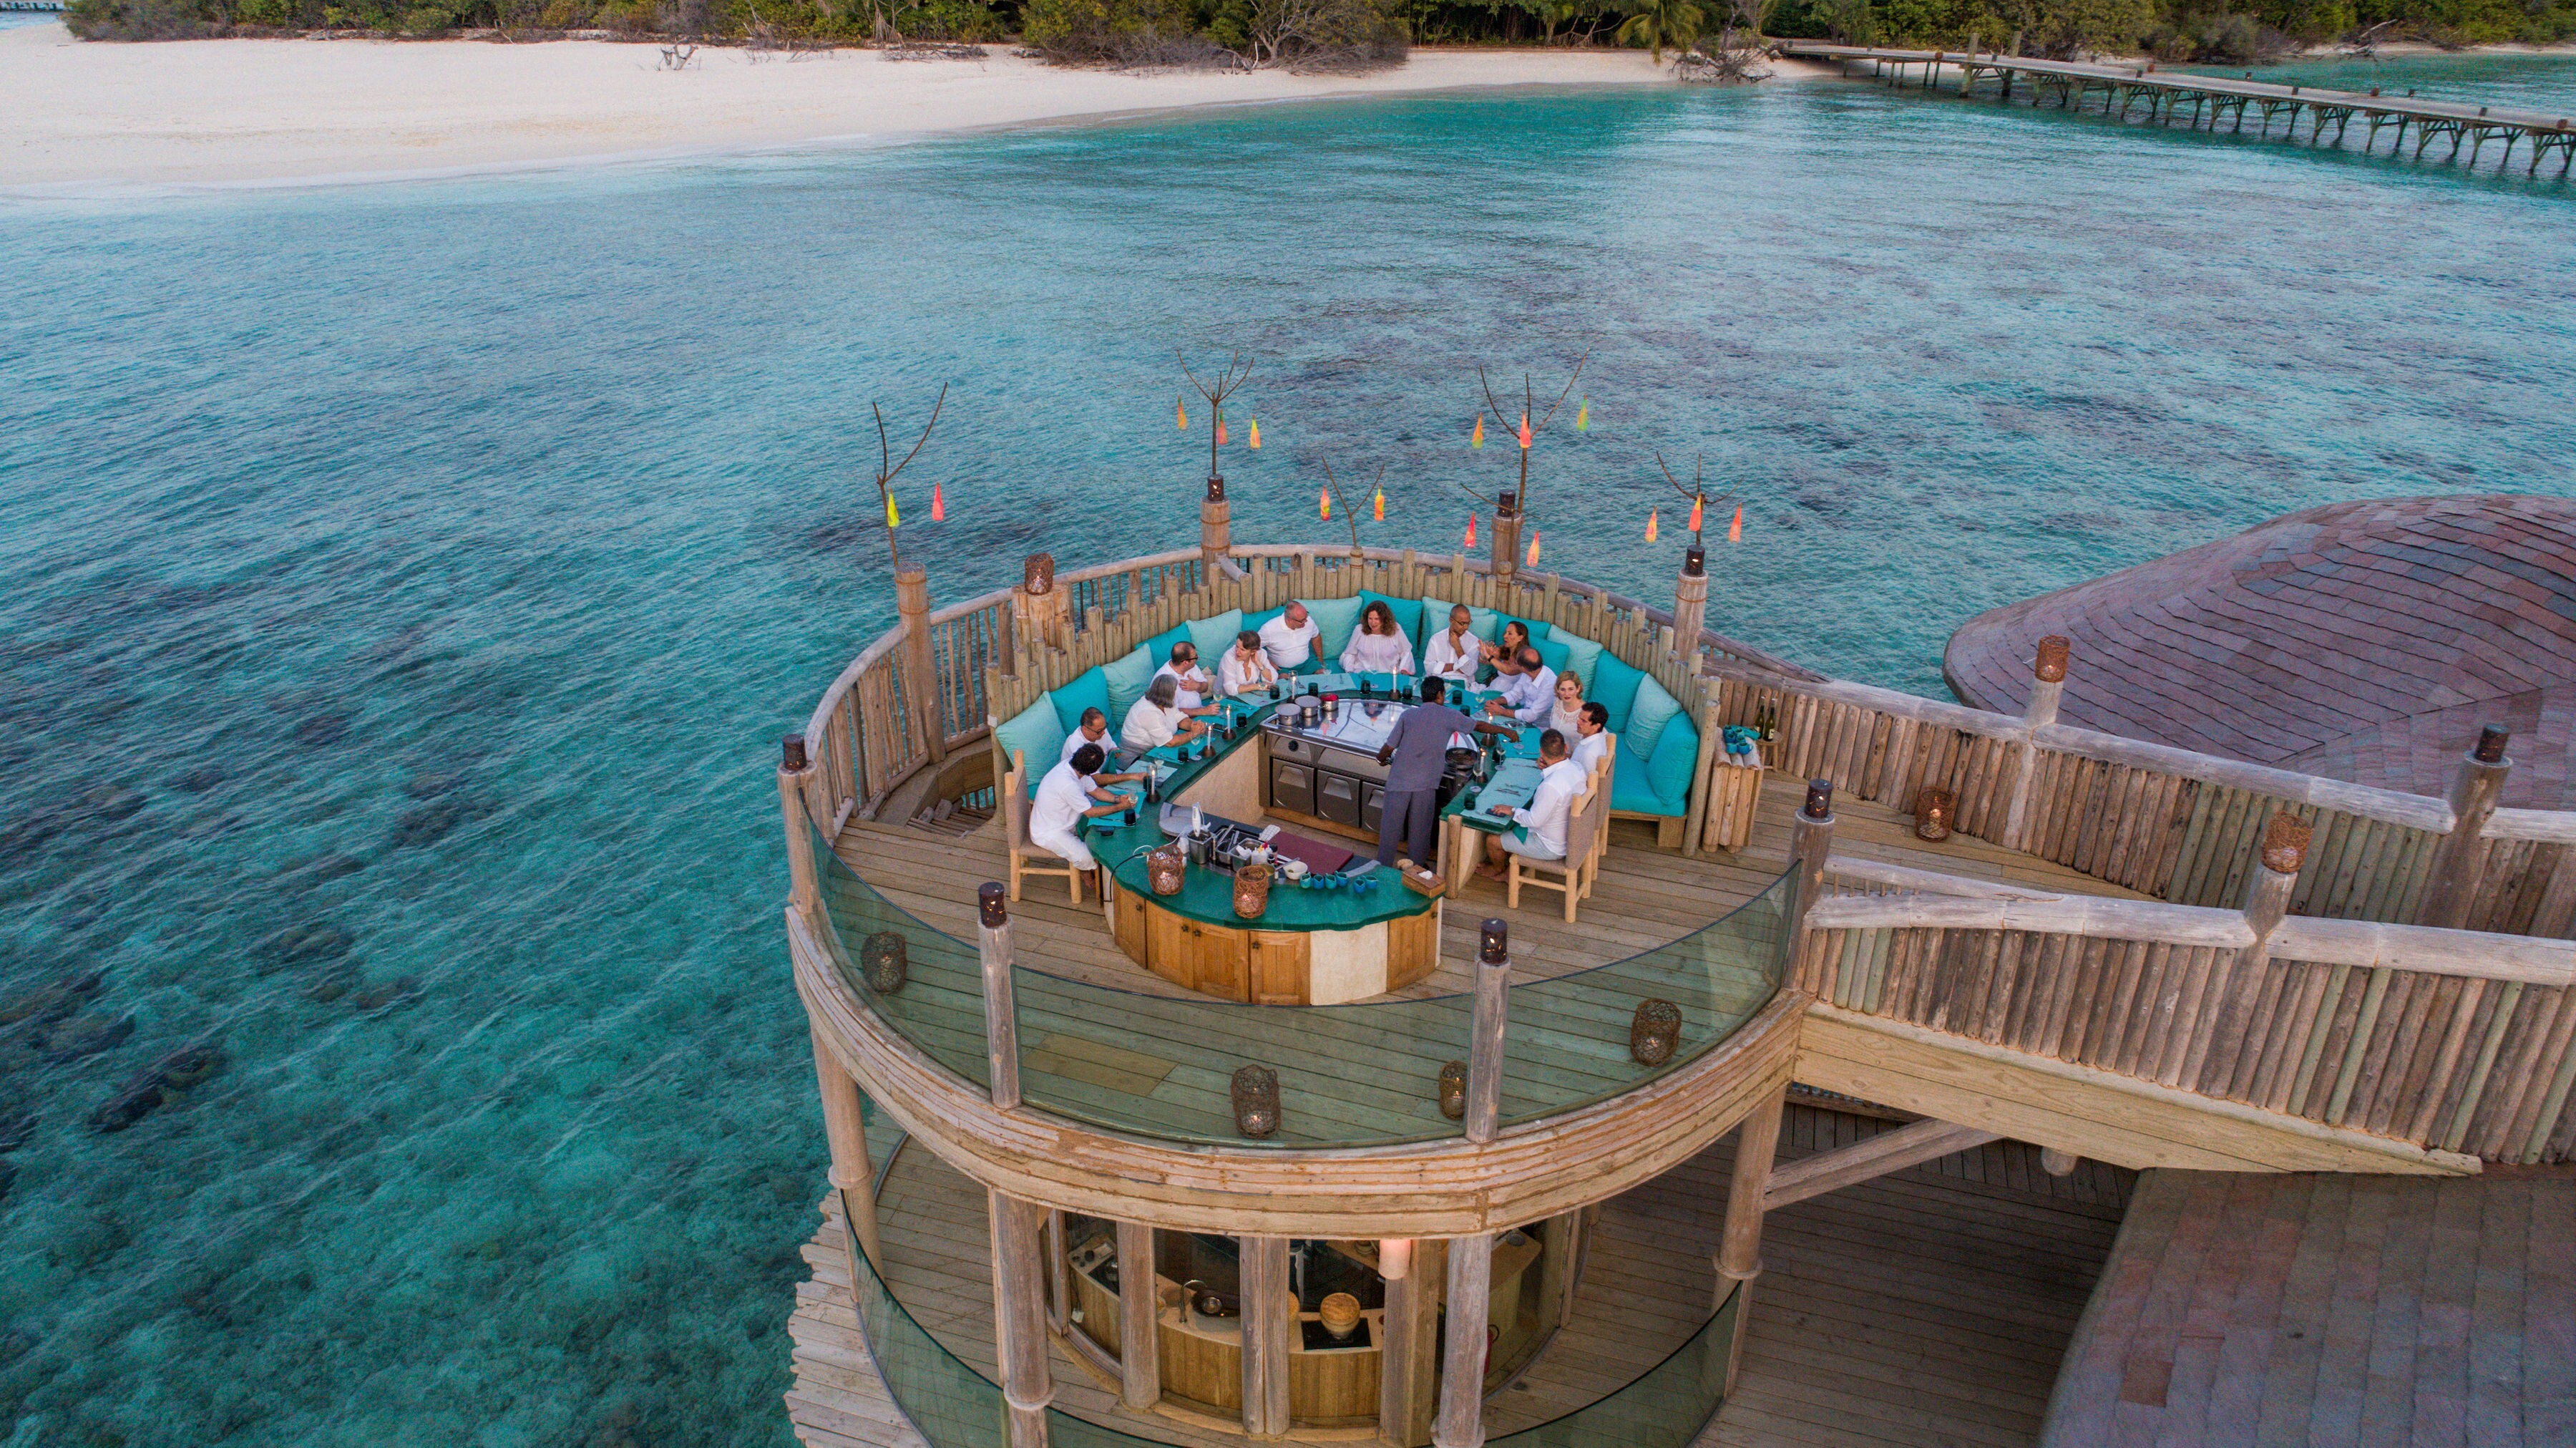 The meeting room and dining terrace at Soneva Fushi in the Maldives. Photo: Soneva Fushi